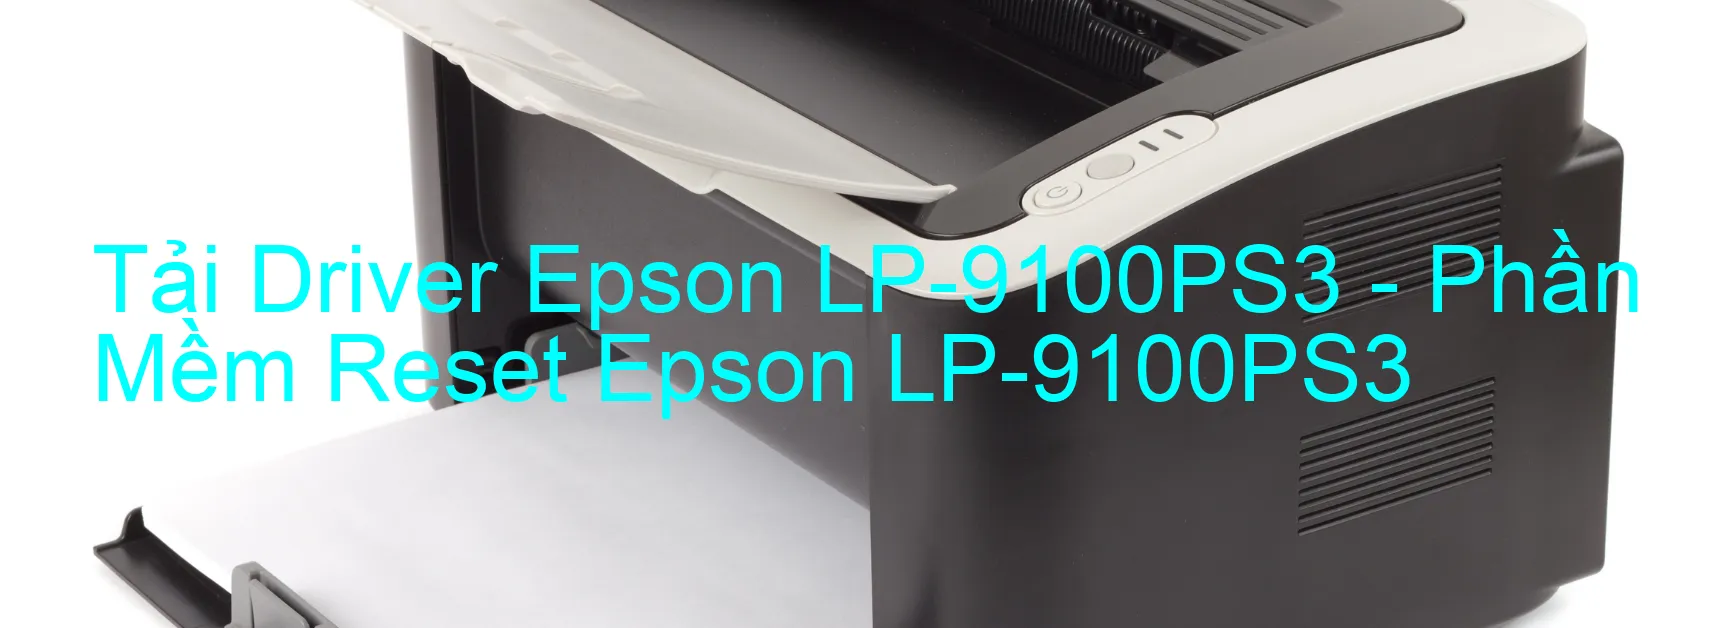 Driver Epson LP-9100PS3, Phần Mềm Reset Epson LP-9100PS3